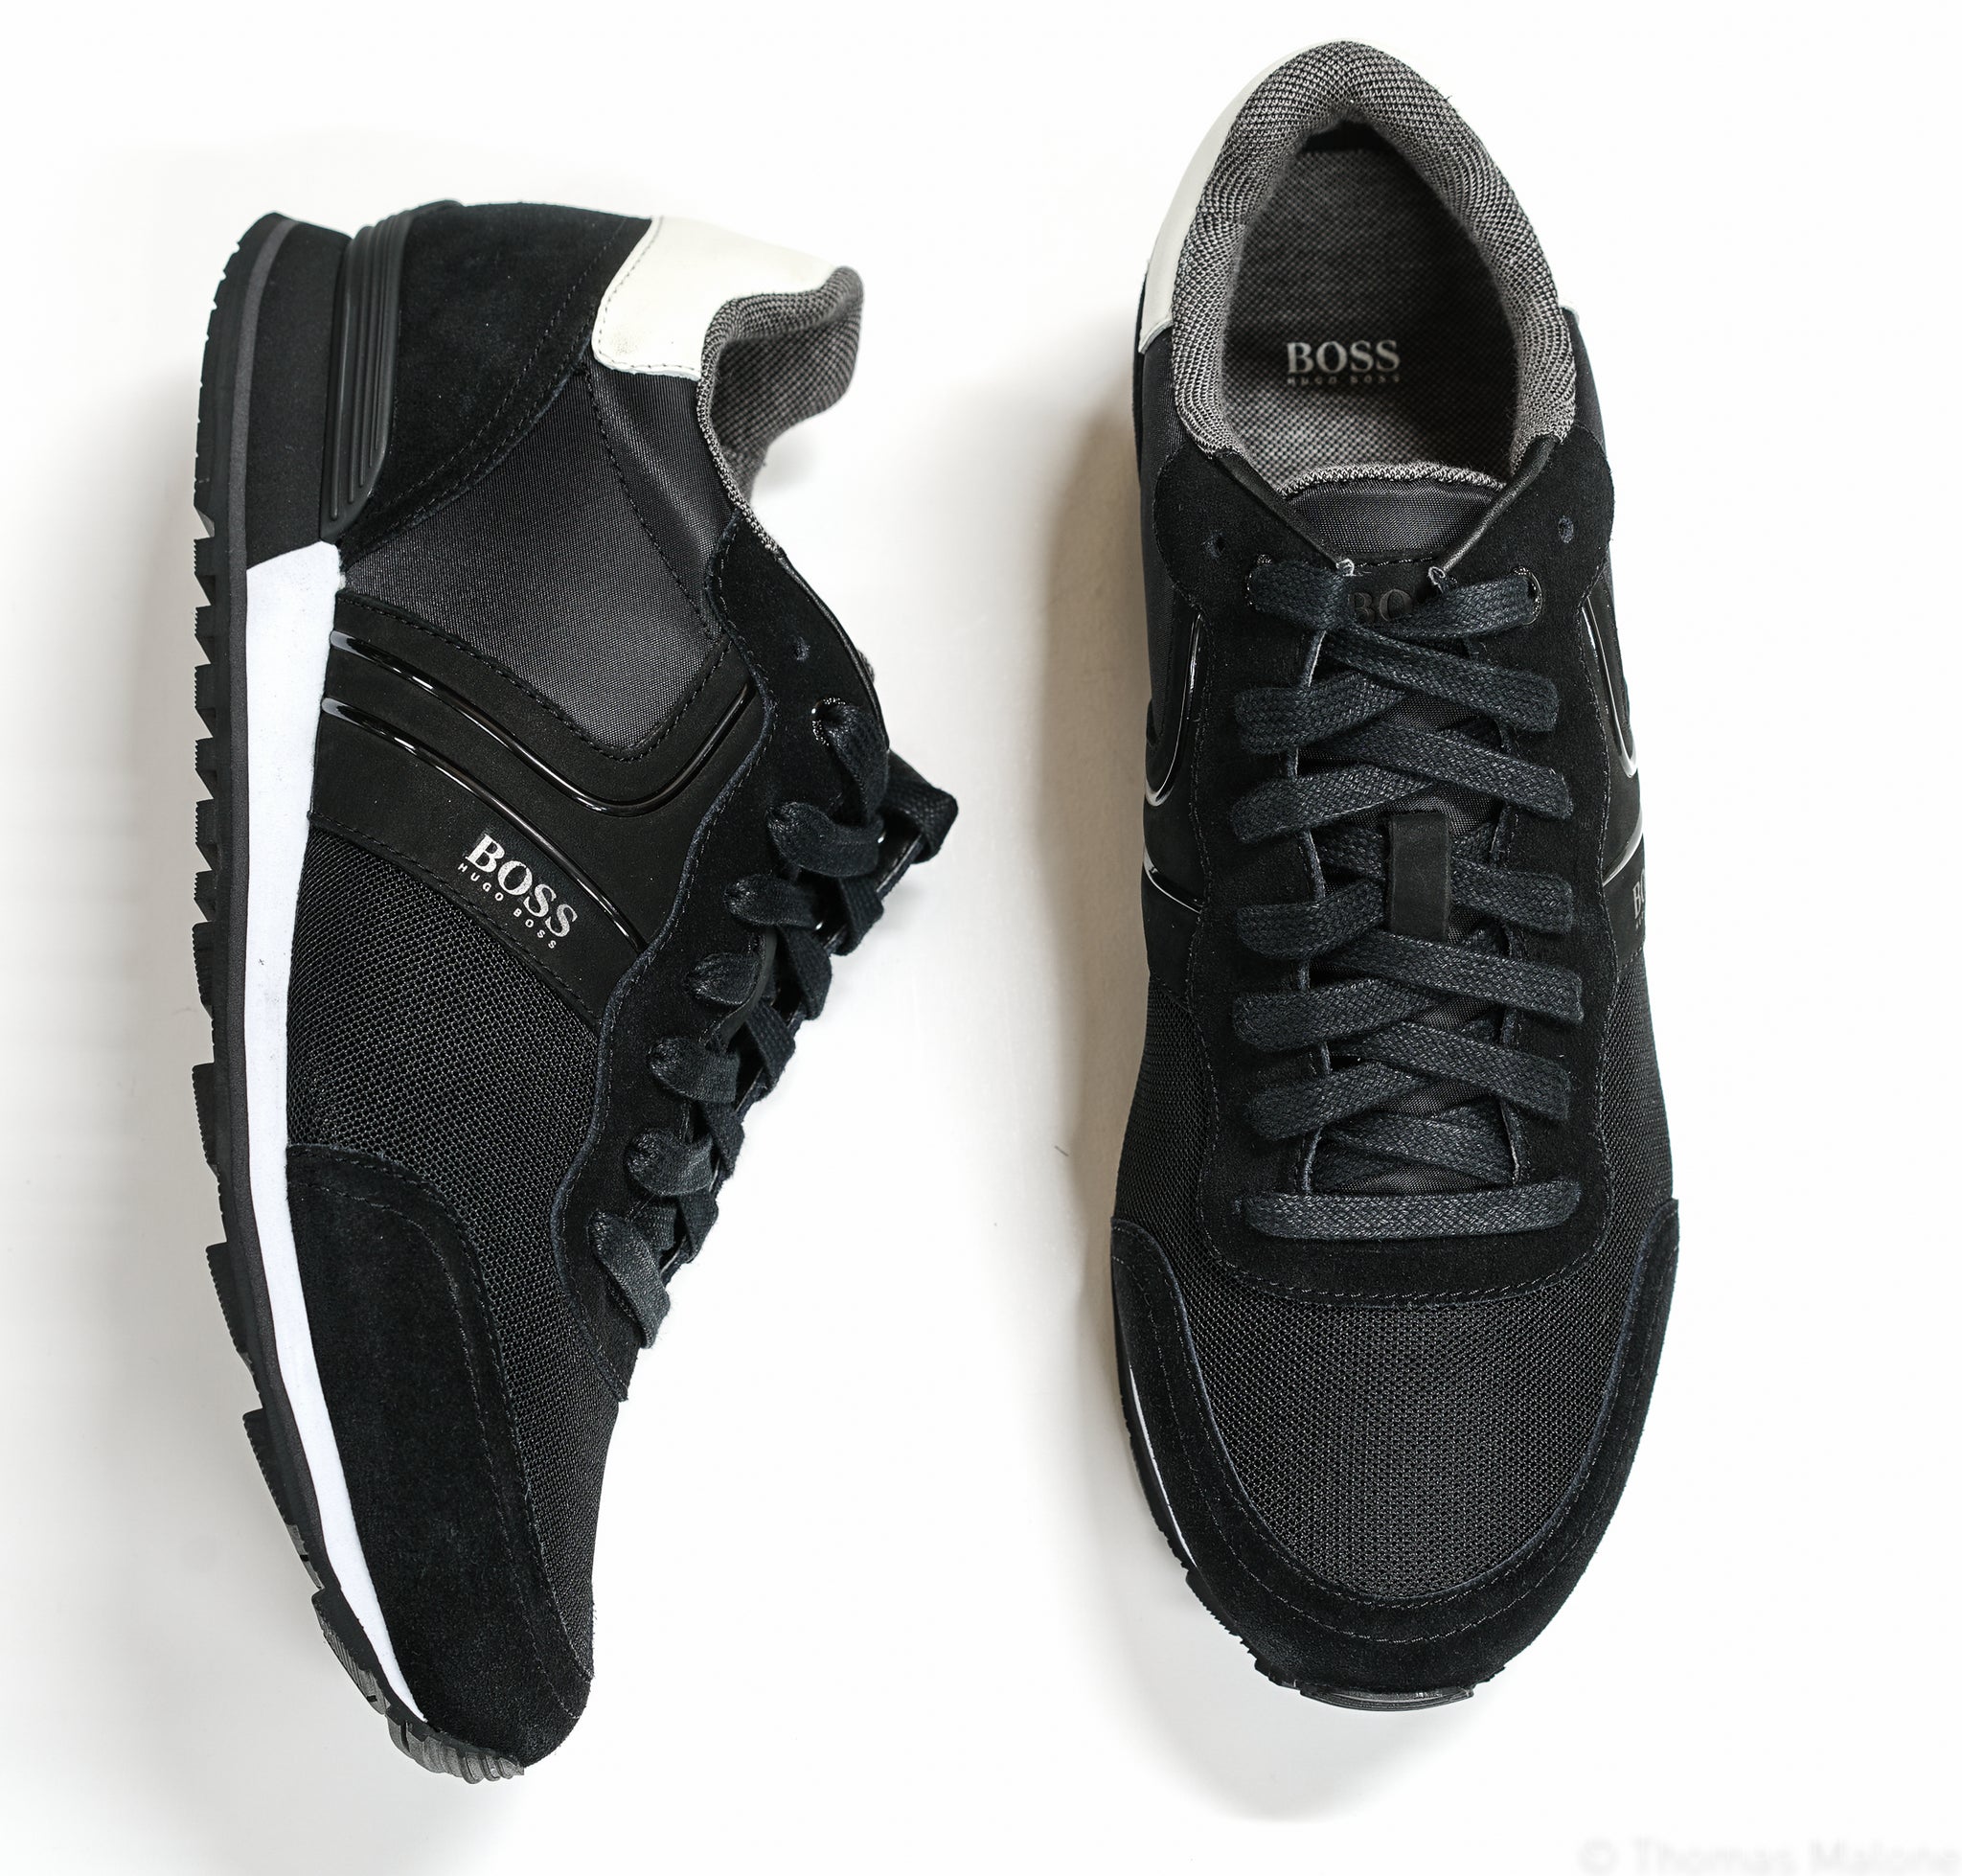 Hugo Boss Men's Black & White Sneakers Parkour